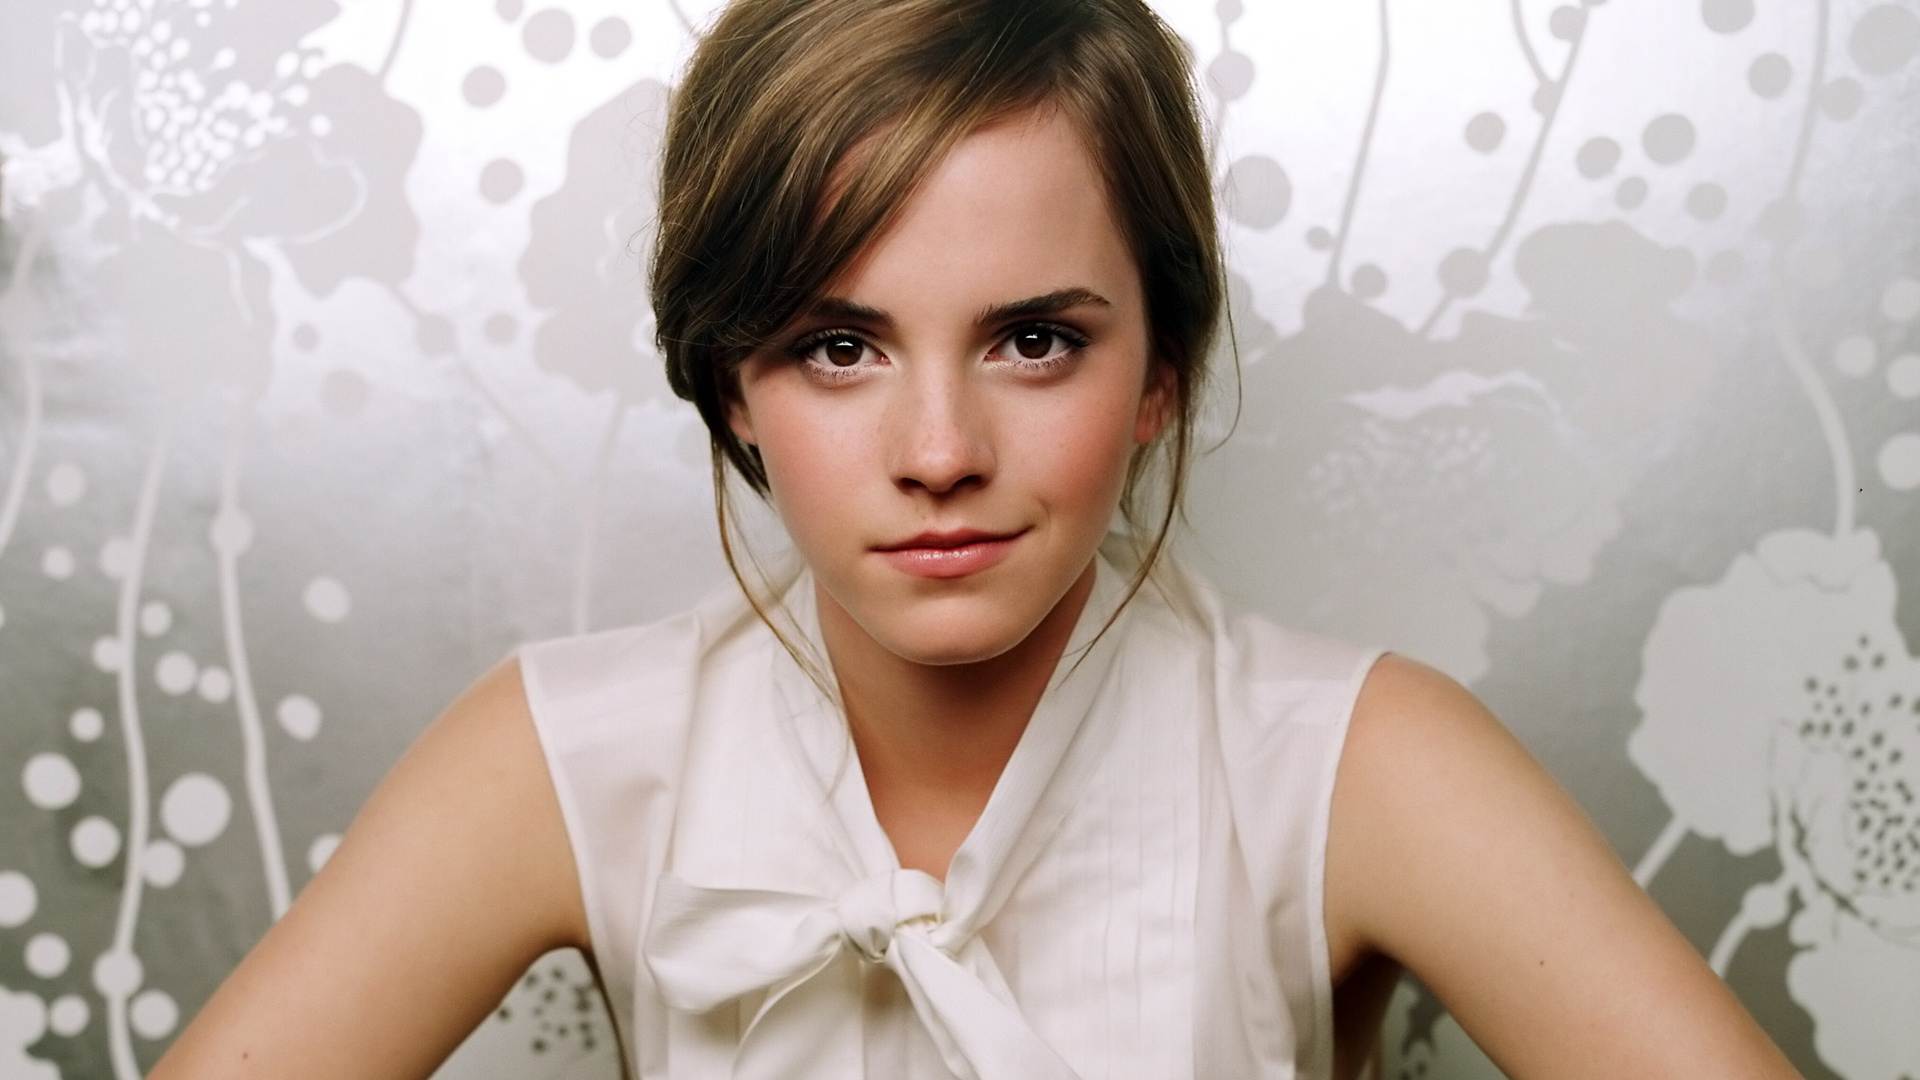 Emma Watson HD Wallpaper | Background Image | 1920x1080 ...